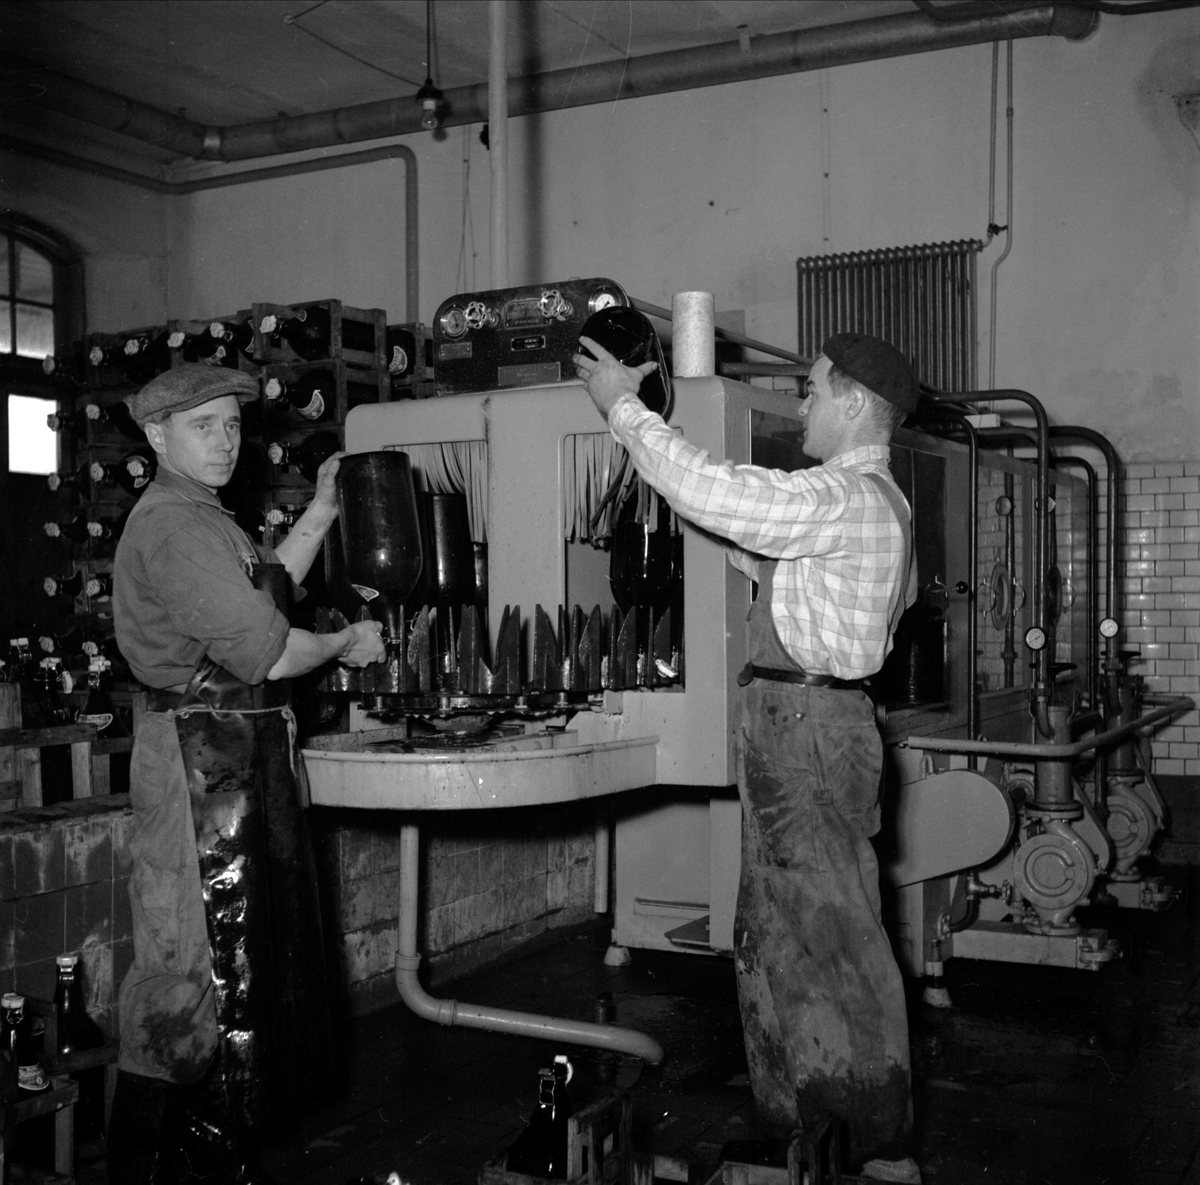 "Mejeri blev bryggeri", Storvreta Bryggeri, Rasbo, Uppland 1951. Ingvar Eriksson och verkmästare Edvin Larsson vid den stora diskmaskinen